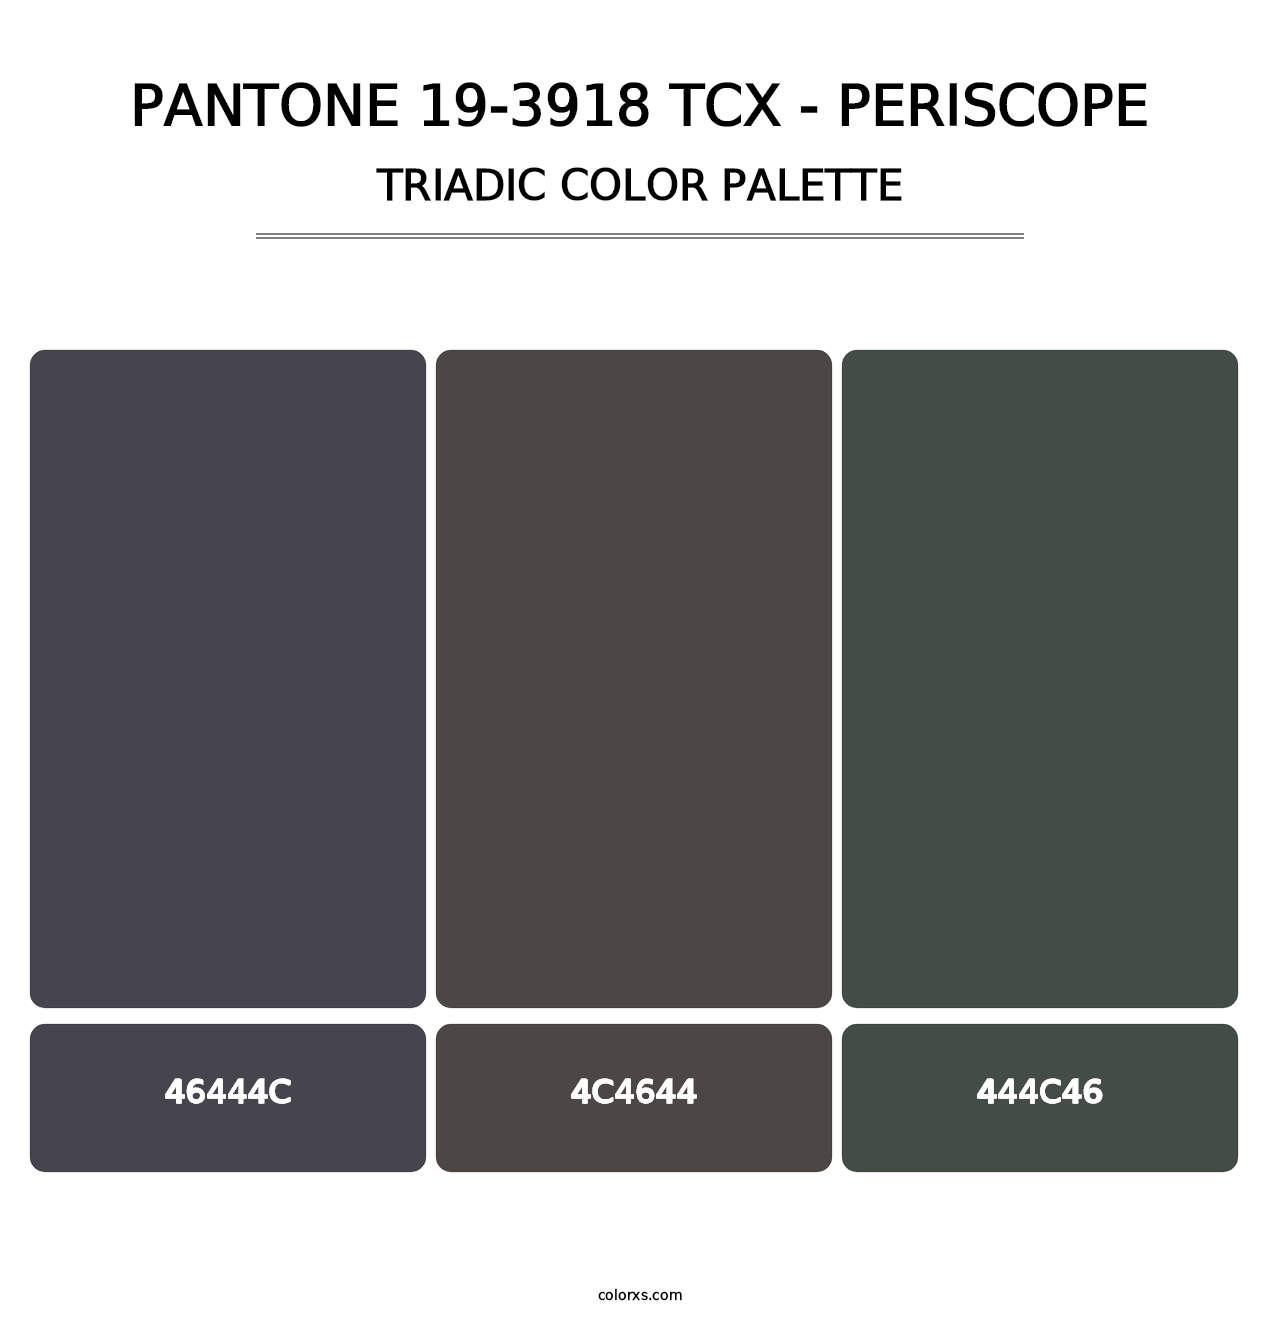 PANTONE 19-3918 TCX - Periscope - Triadic Color Palette